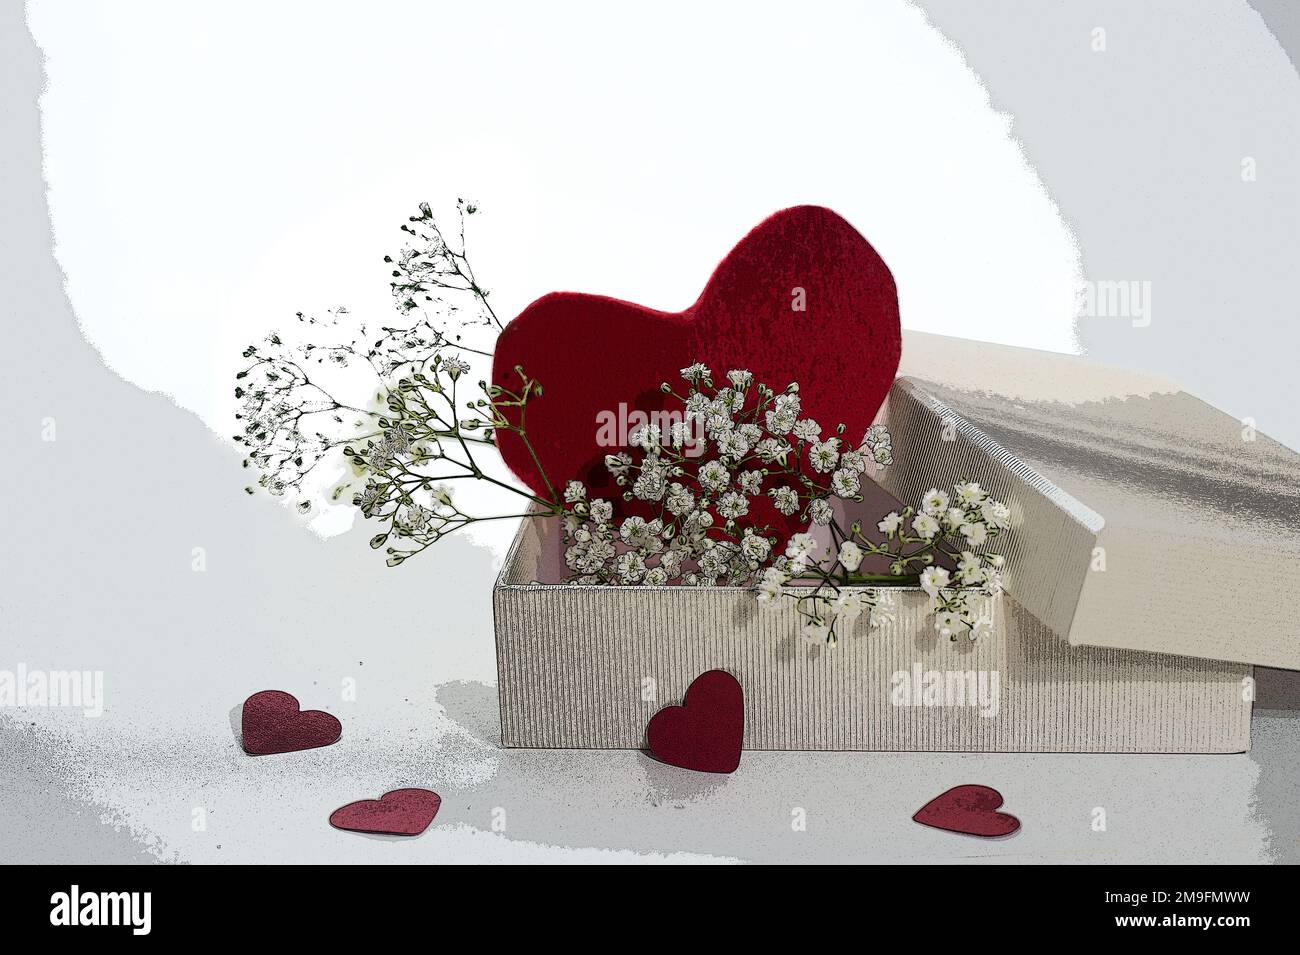 Forme coeur rouge dans une boîte cadeau avec quelques petites fleurs, symbole d'amour pour le jour de la Saint Valentin ou le jour de la mère, style rétro avec filtre pop art illustratif, co Banque D'Images